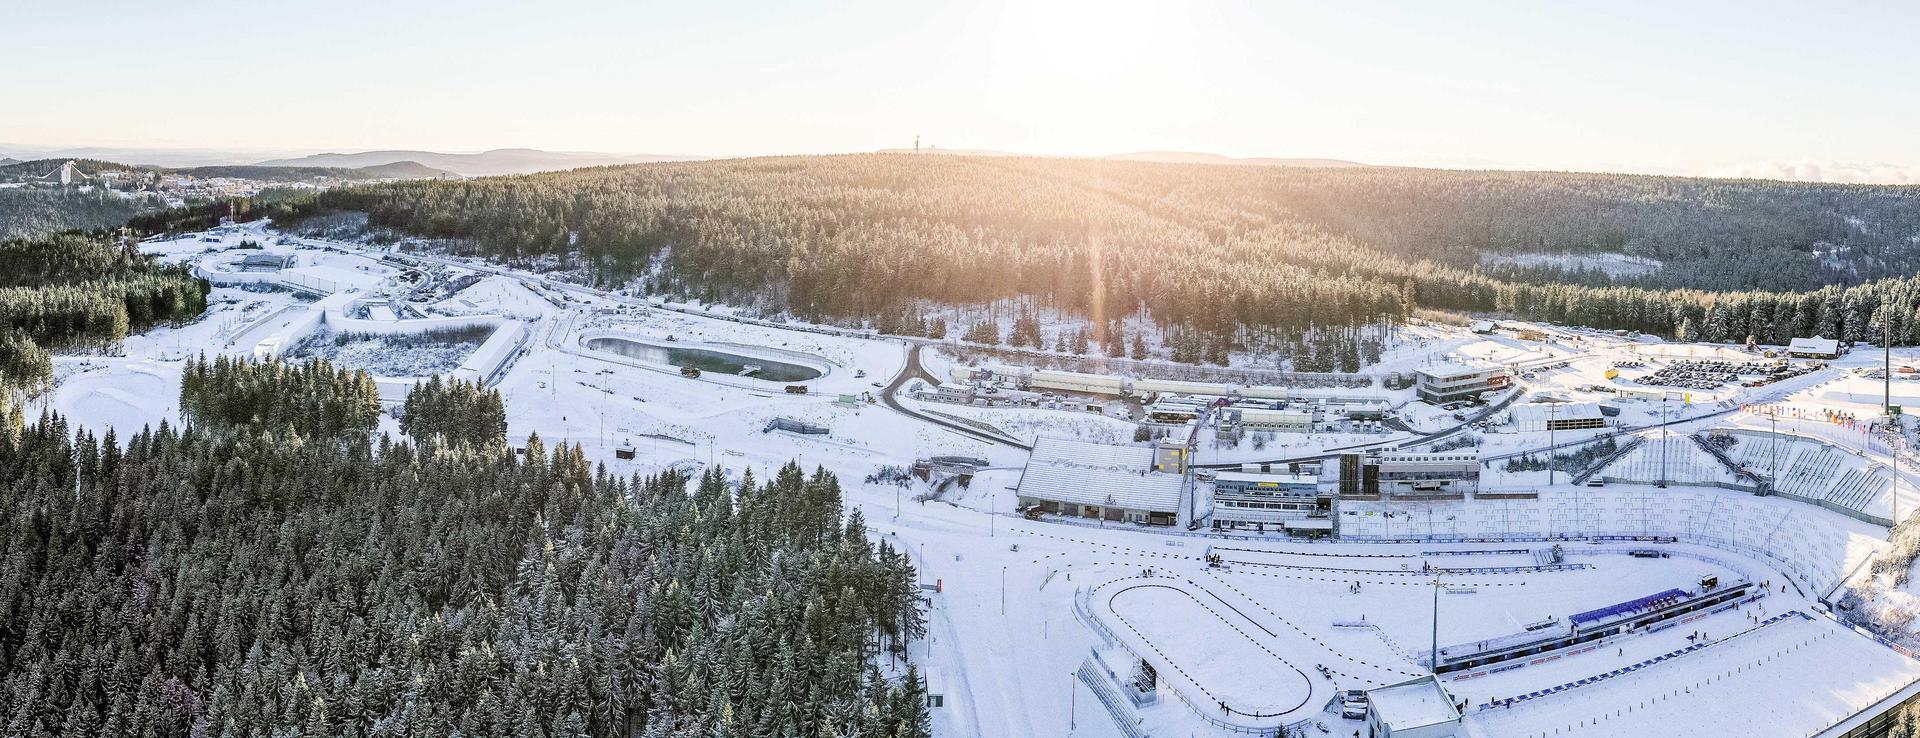 Im Zuge einer klimaneutralen Energieversorgung werden die Oberhofer Wintersportstätten sukzessive energetisch ertüchtigt. Foto: Christian Heilwagen